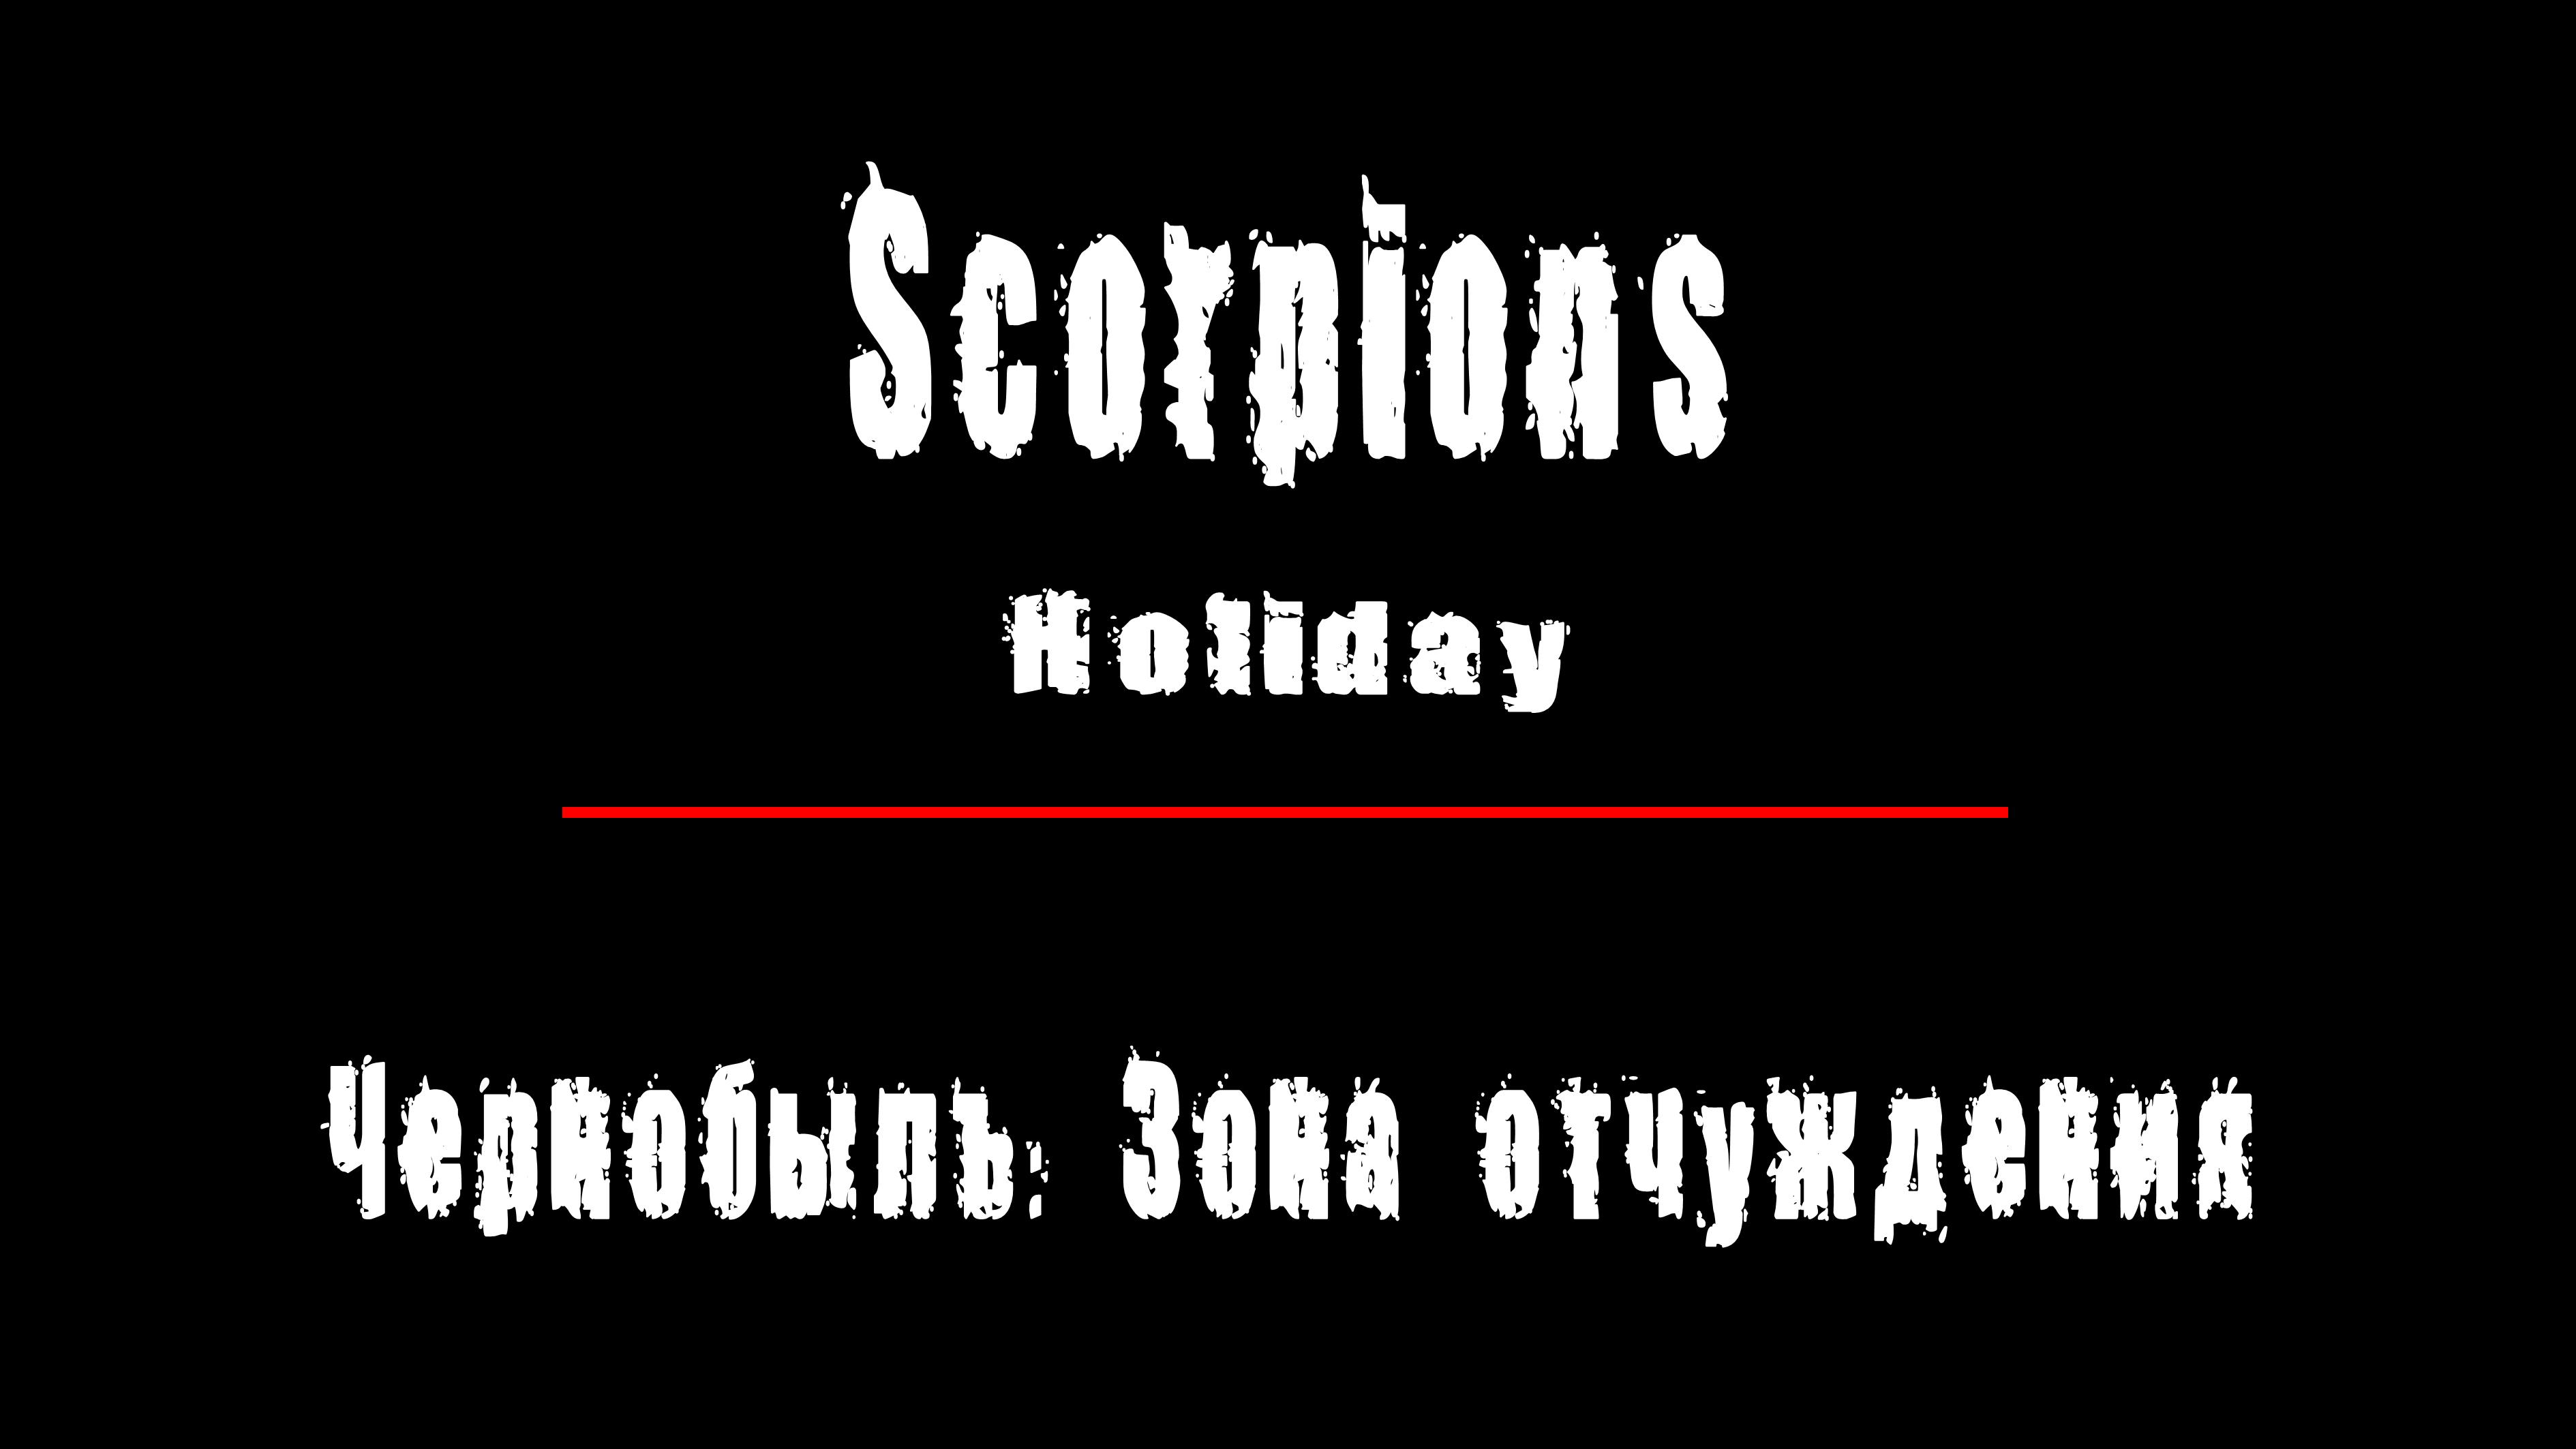 "HOLIDAY" - группа "Scorpions". Чернобыль: Зона Отчуждения, Припять.